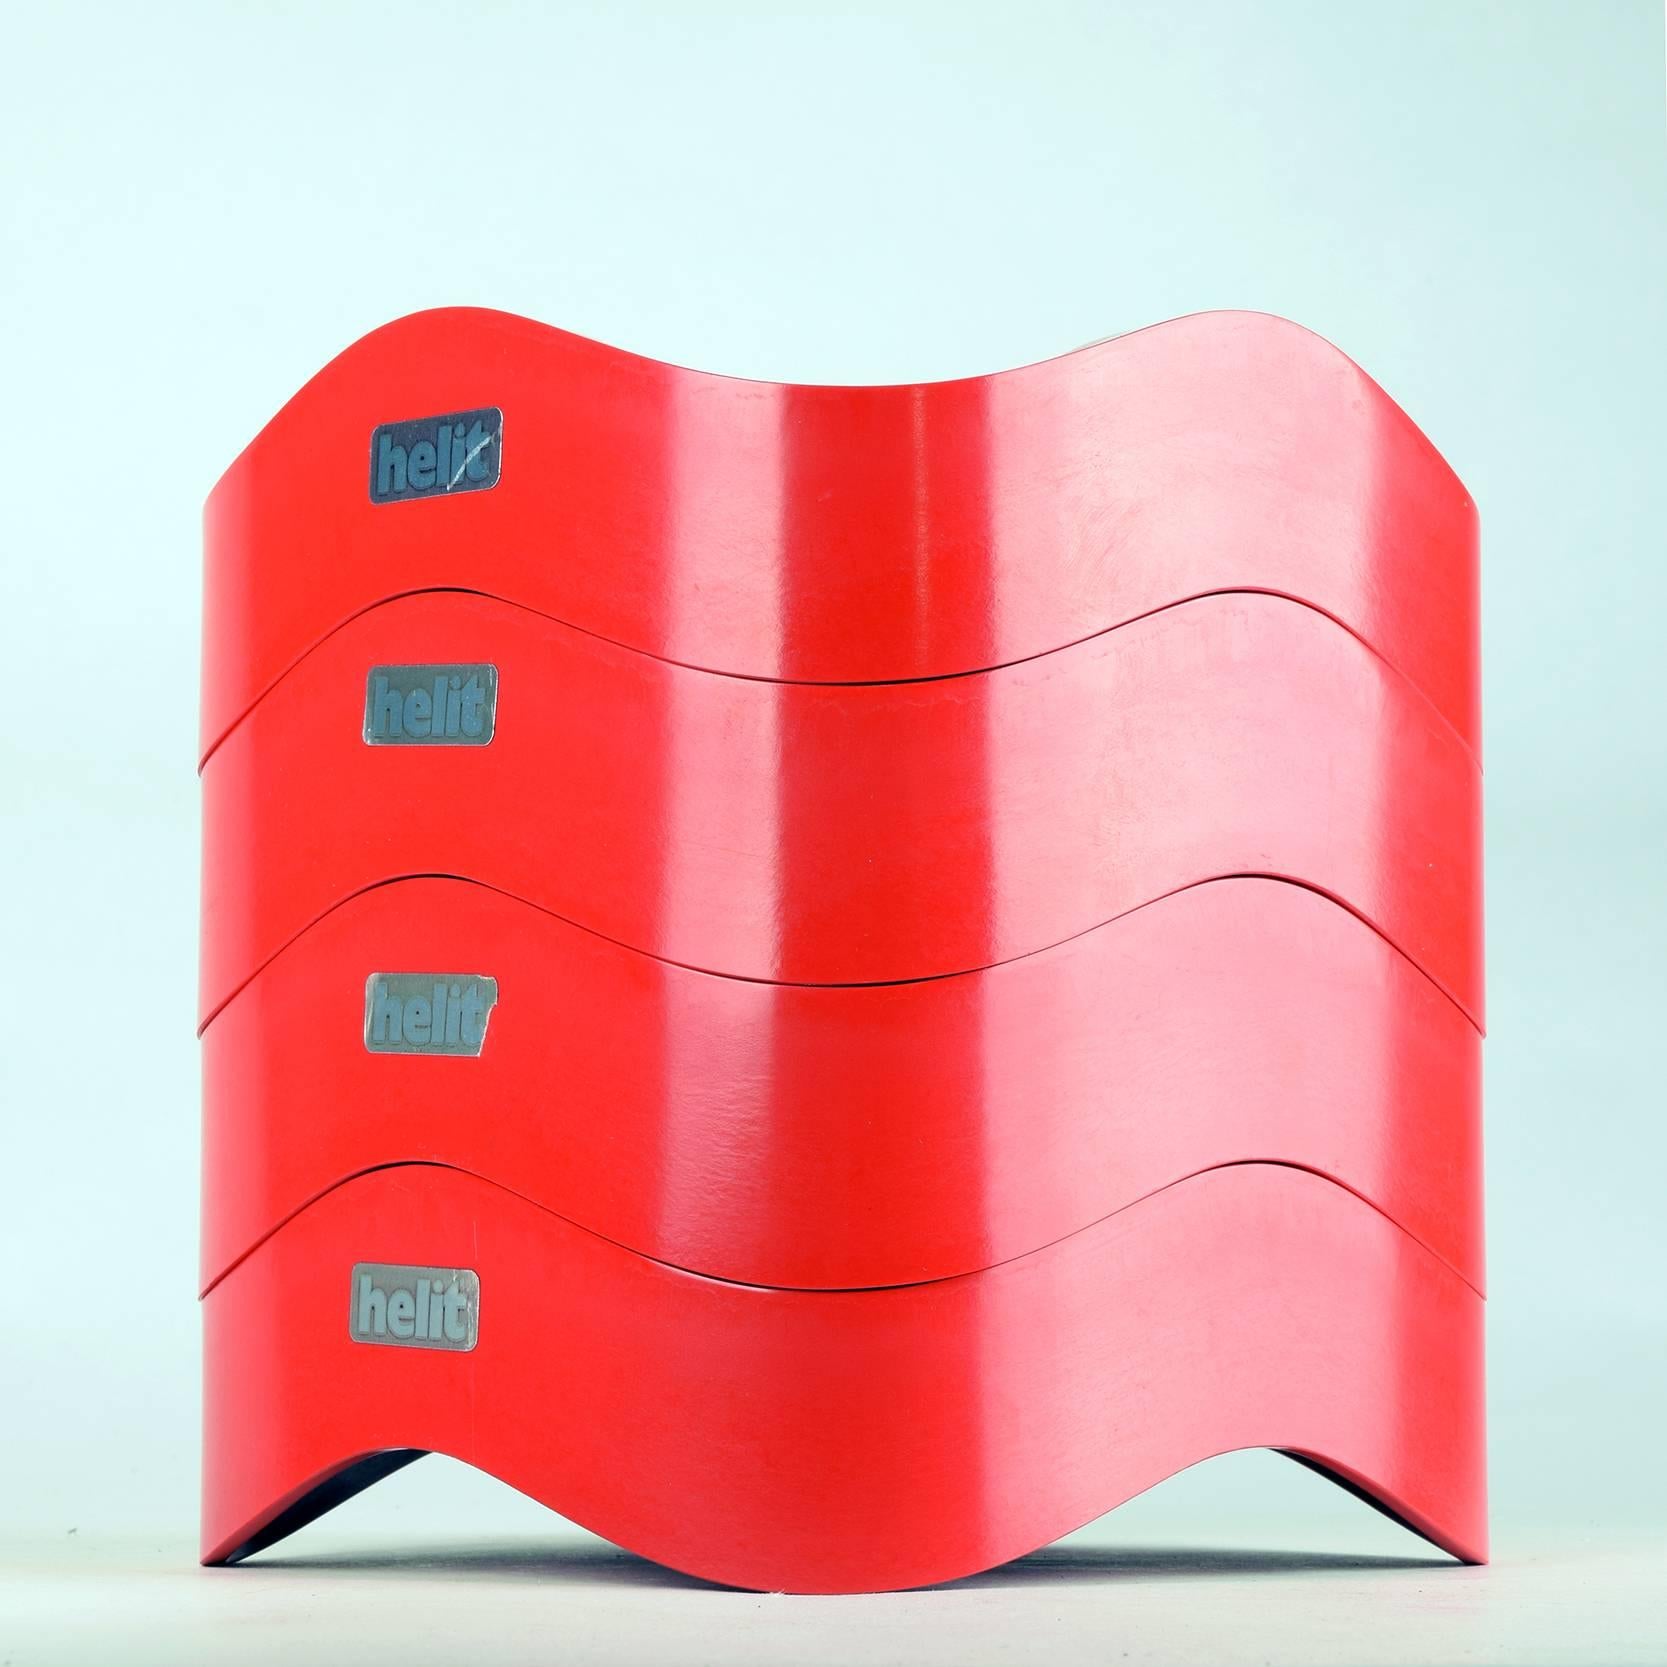 Walter Zeischegg pour Helit, Ulm, W. Allemagne
Grands cendriers / bols empilables, modèle 84009, conçu en 1967
Mélamine rouge, étiquettes originales.

Il s'agit d'une série de production précoce, dans un état proche de la perfection et ne